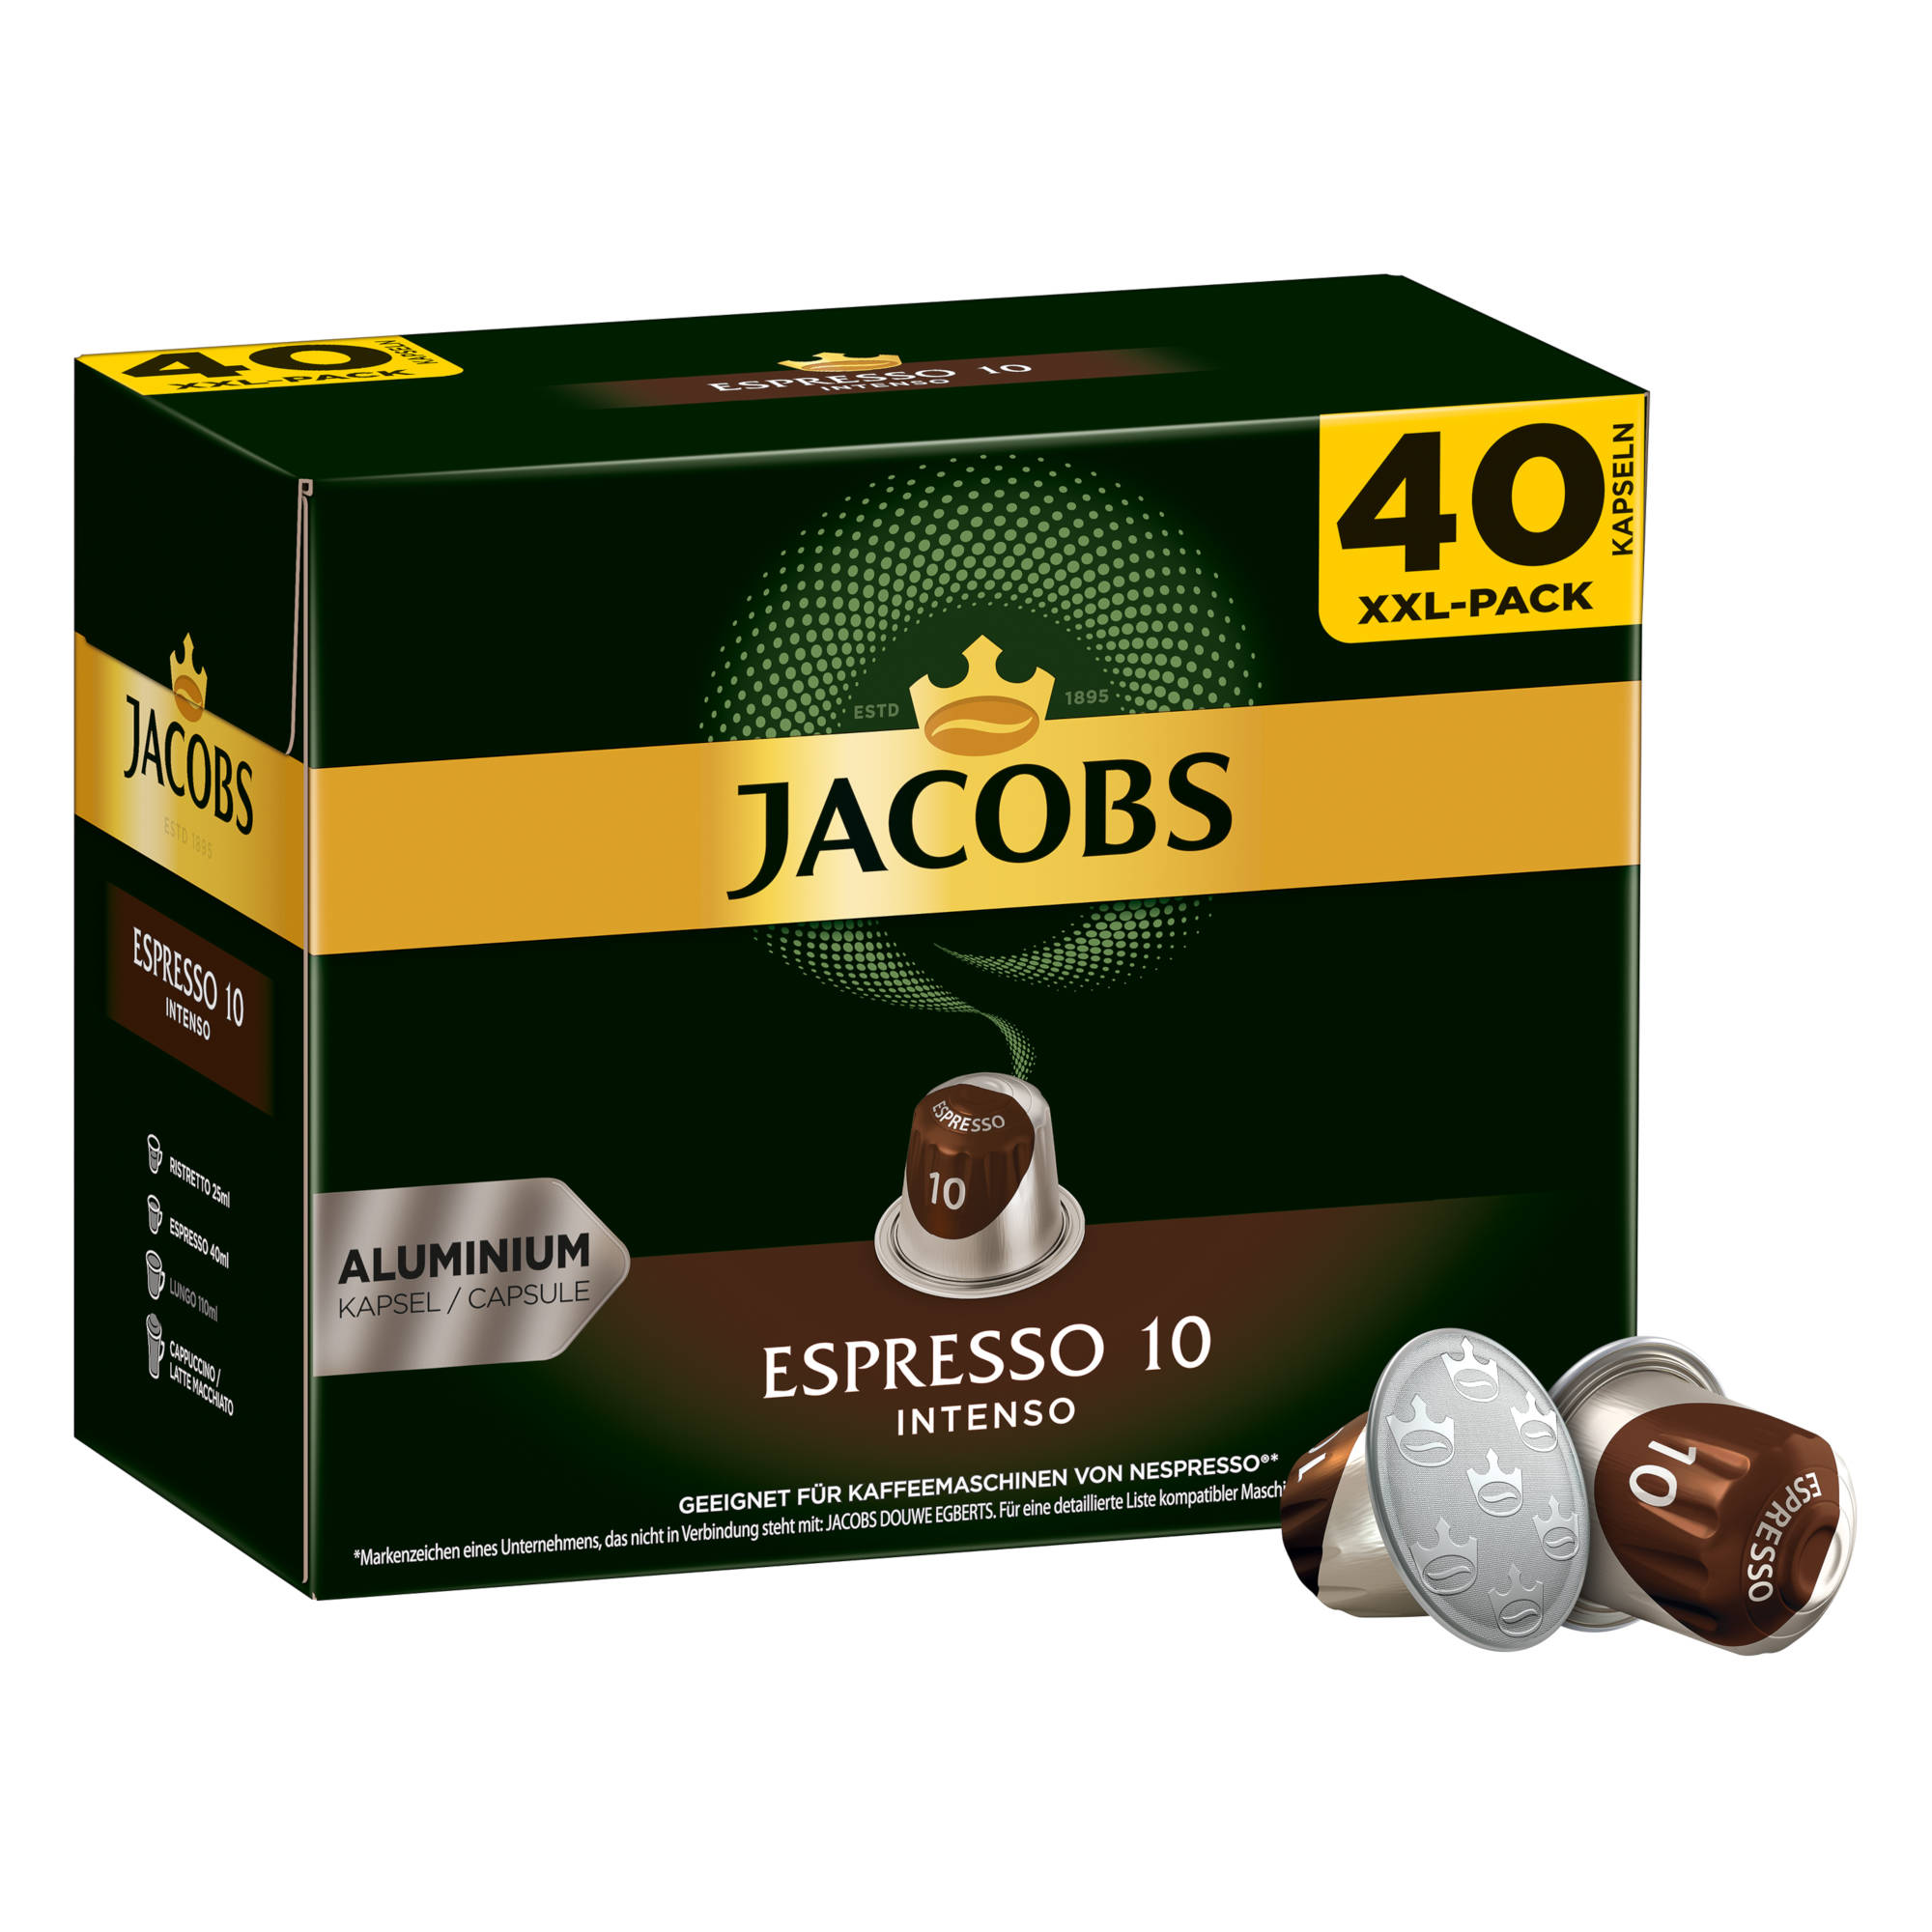 (Nespresso + System) Kaffeekapseln 160 Espresso 10 XXL-Packs Intenso Classico Nespresso®* - Lungo kompatible JACOBS 6